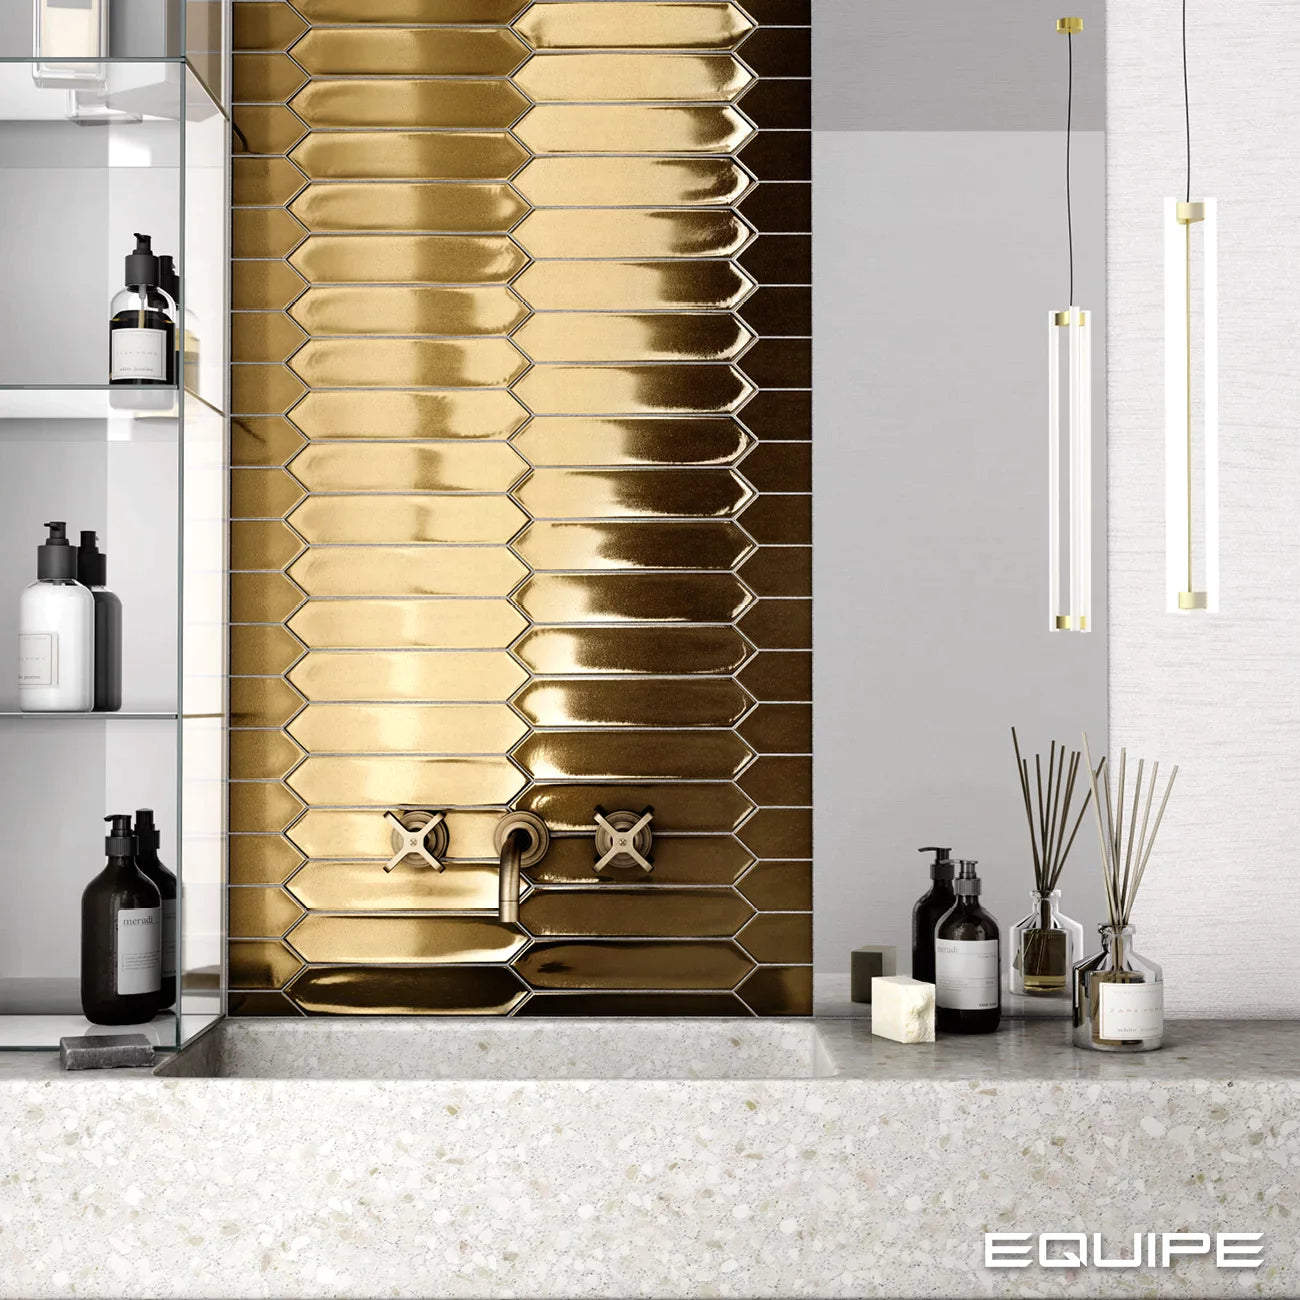 Equipe - Lanse 2" x 10" Ceramic Tile - Gold